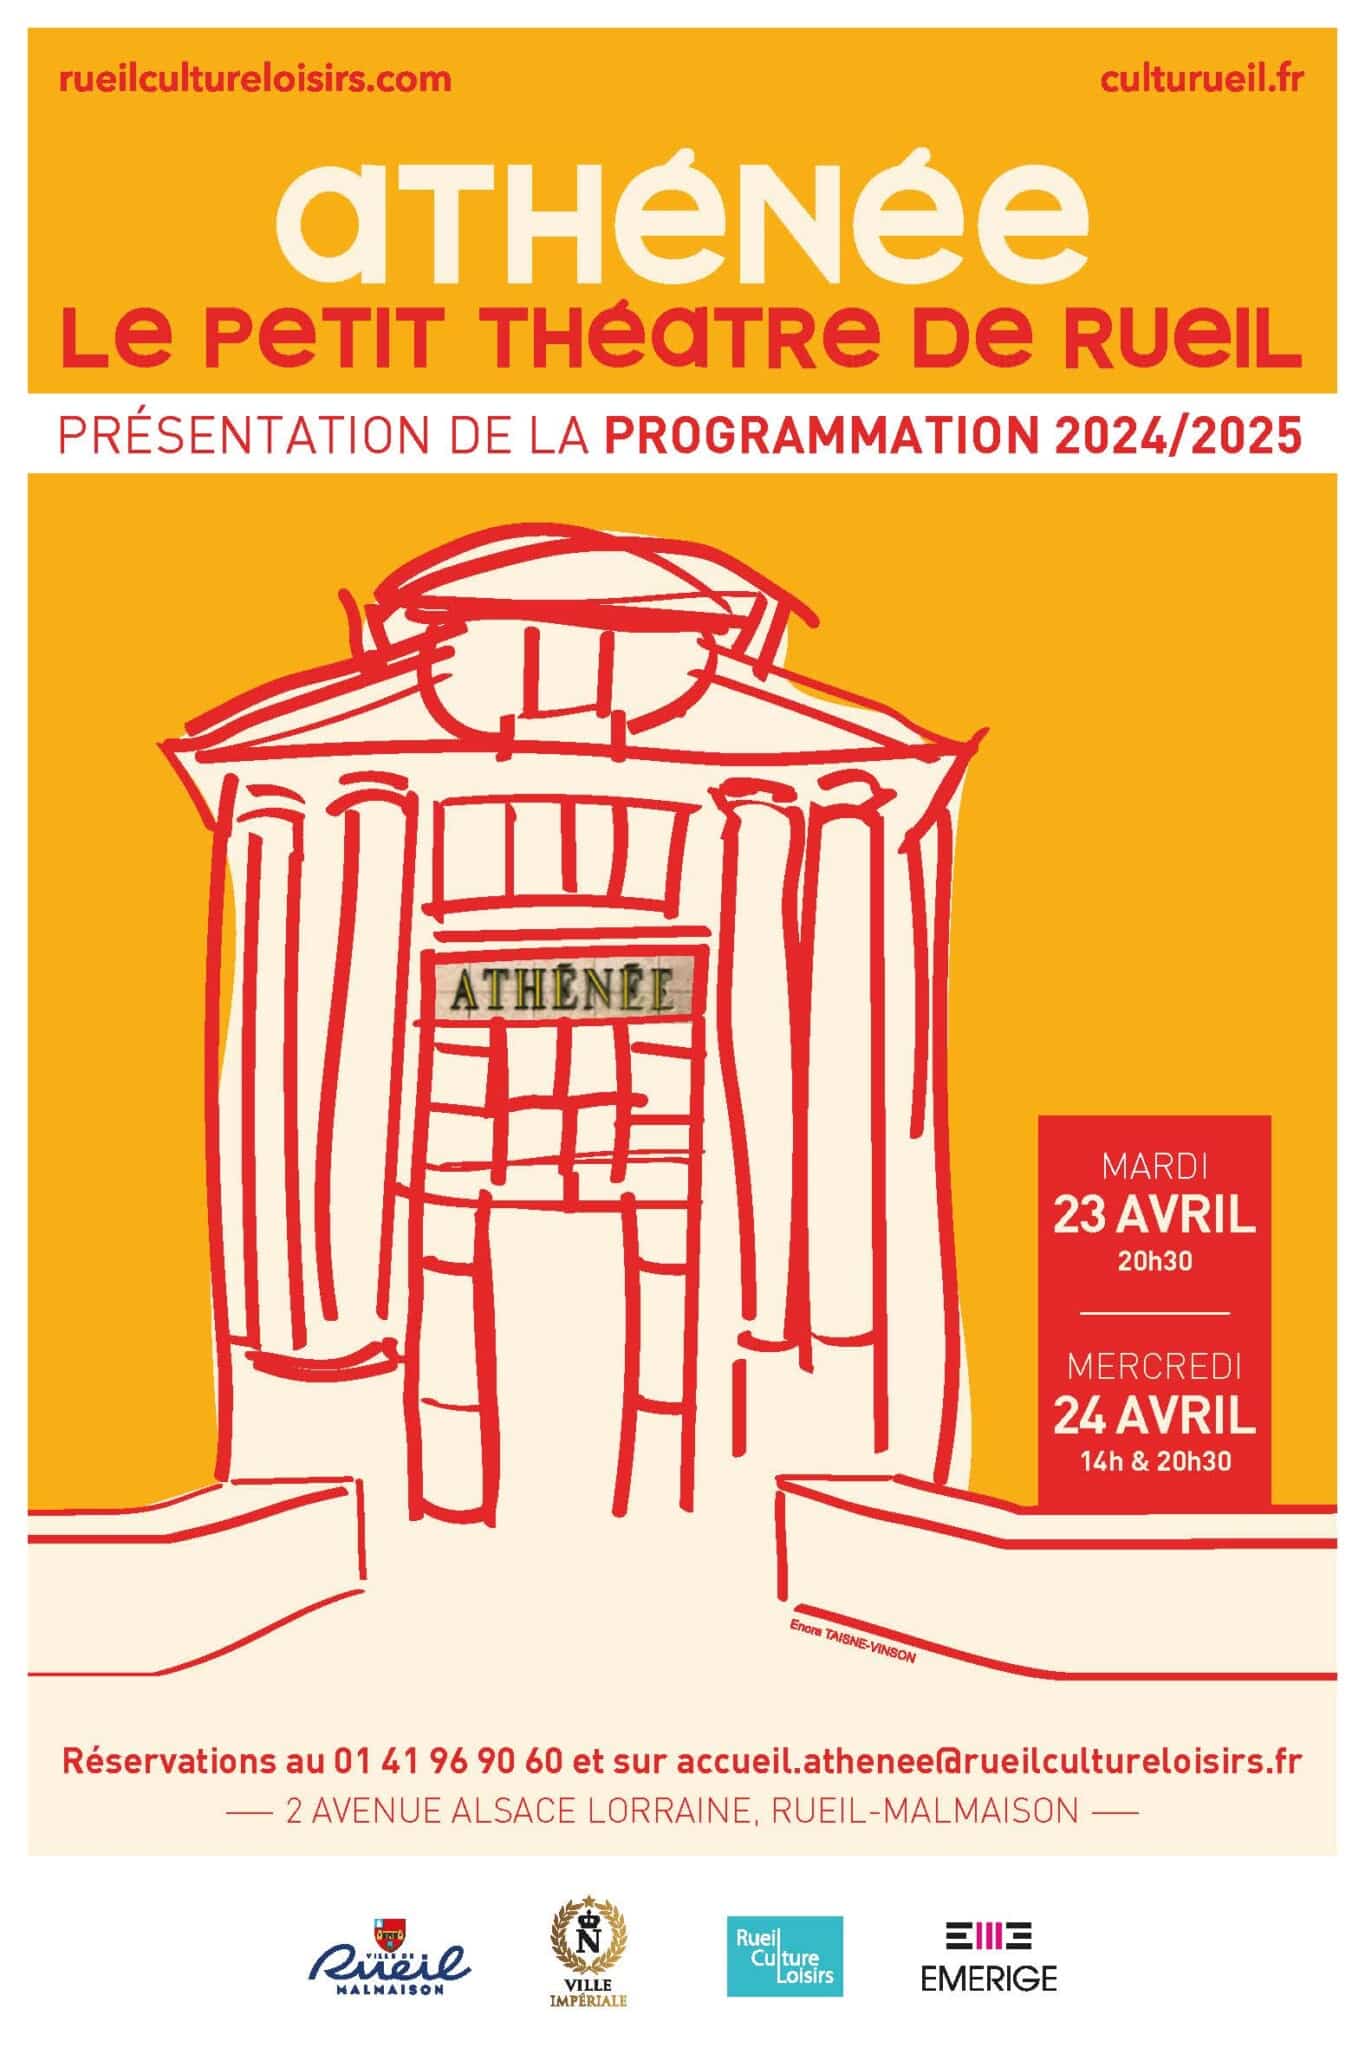 Athénée, le Petit Théâtre de Rueil - Présentation de la programmation 2024/2025